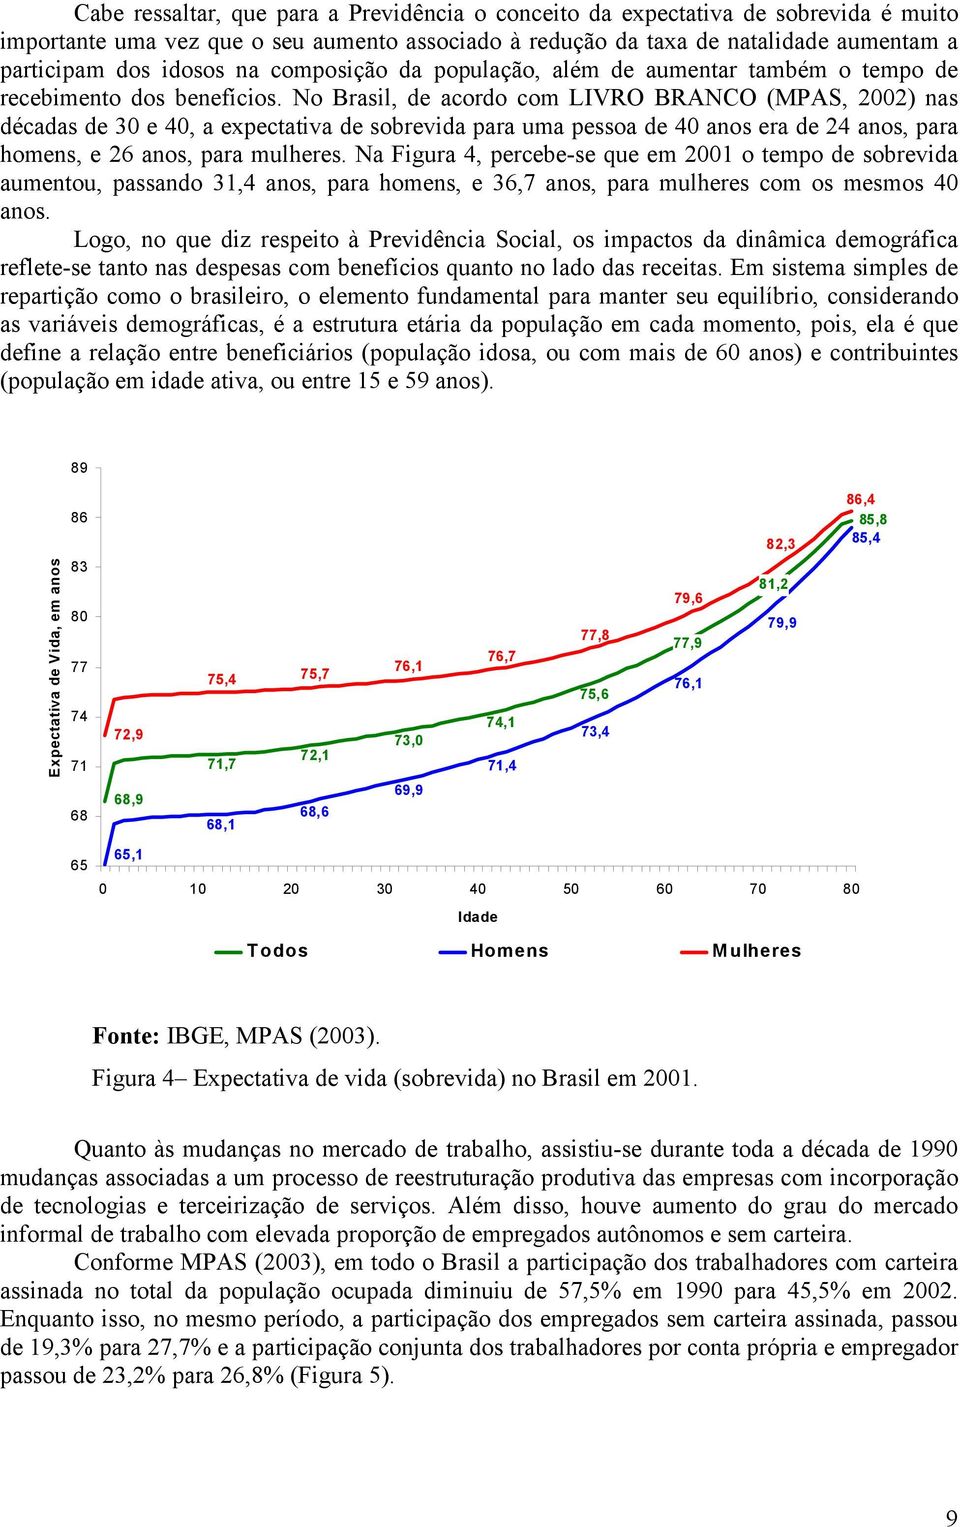 No Brasil, de acordo com LIVRO BRANCO (MPAS, 2002) nas décadas de 30 e 40, a expectativa de sobrevida para uma pessoa de 40 anos era de 24 anos, para homens, e 26 anos, para mulheres.